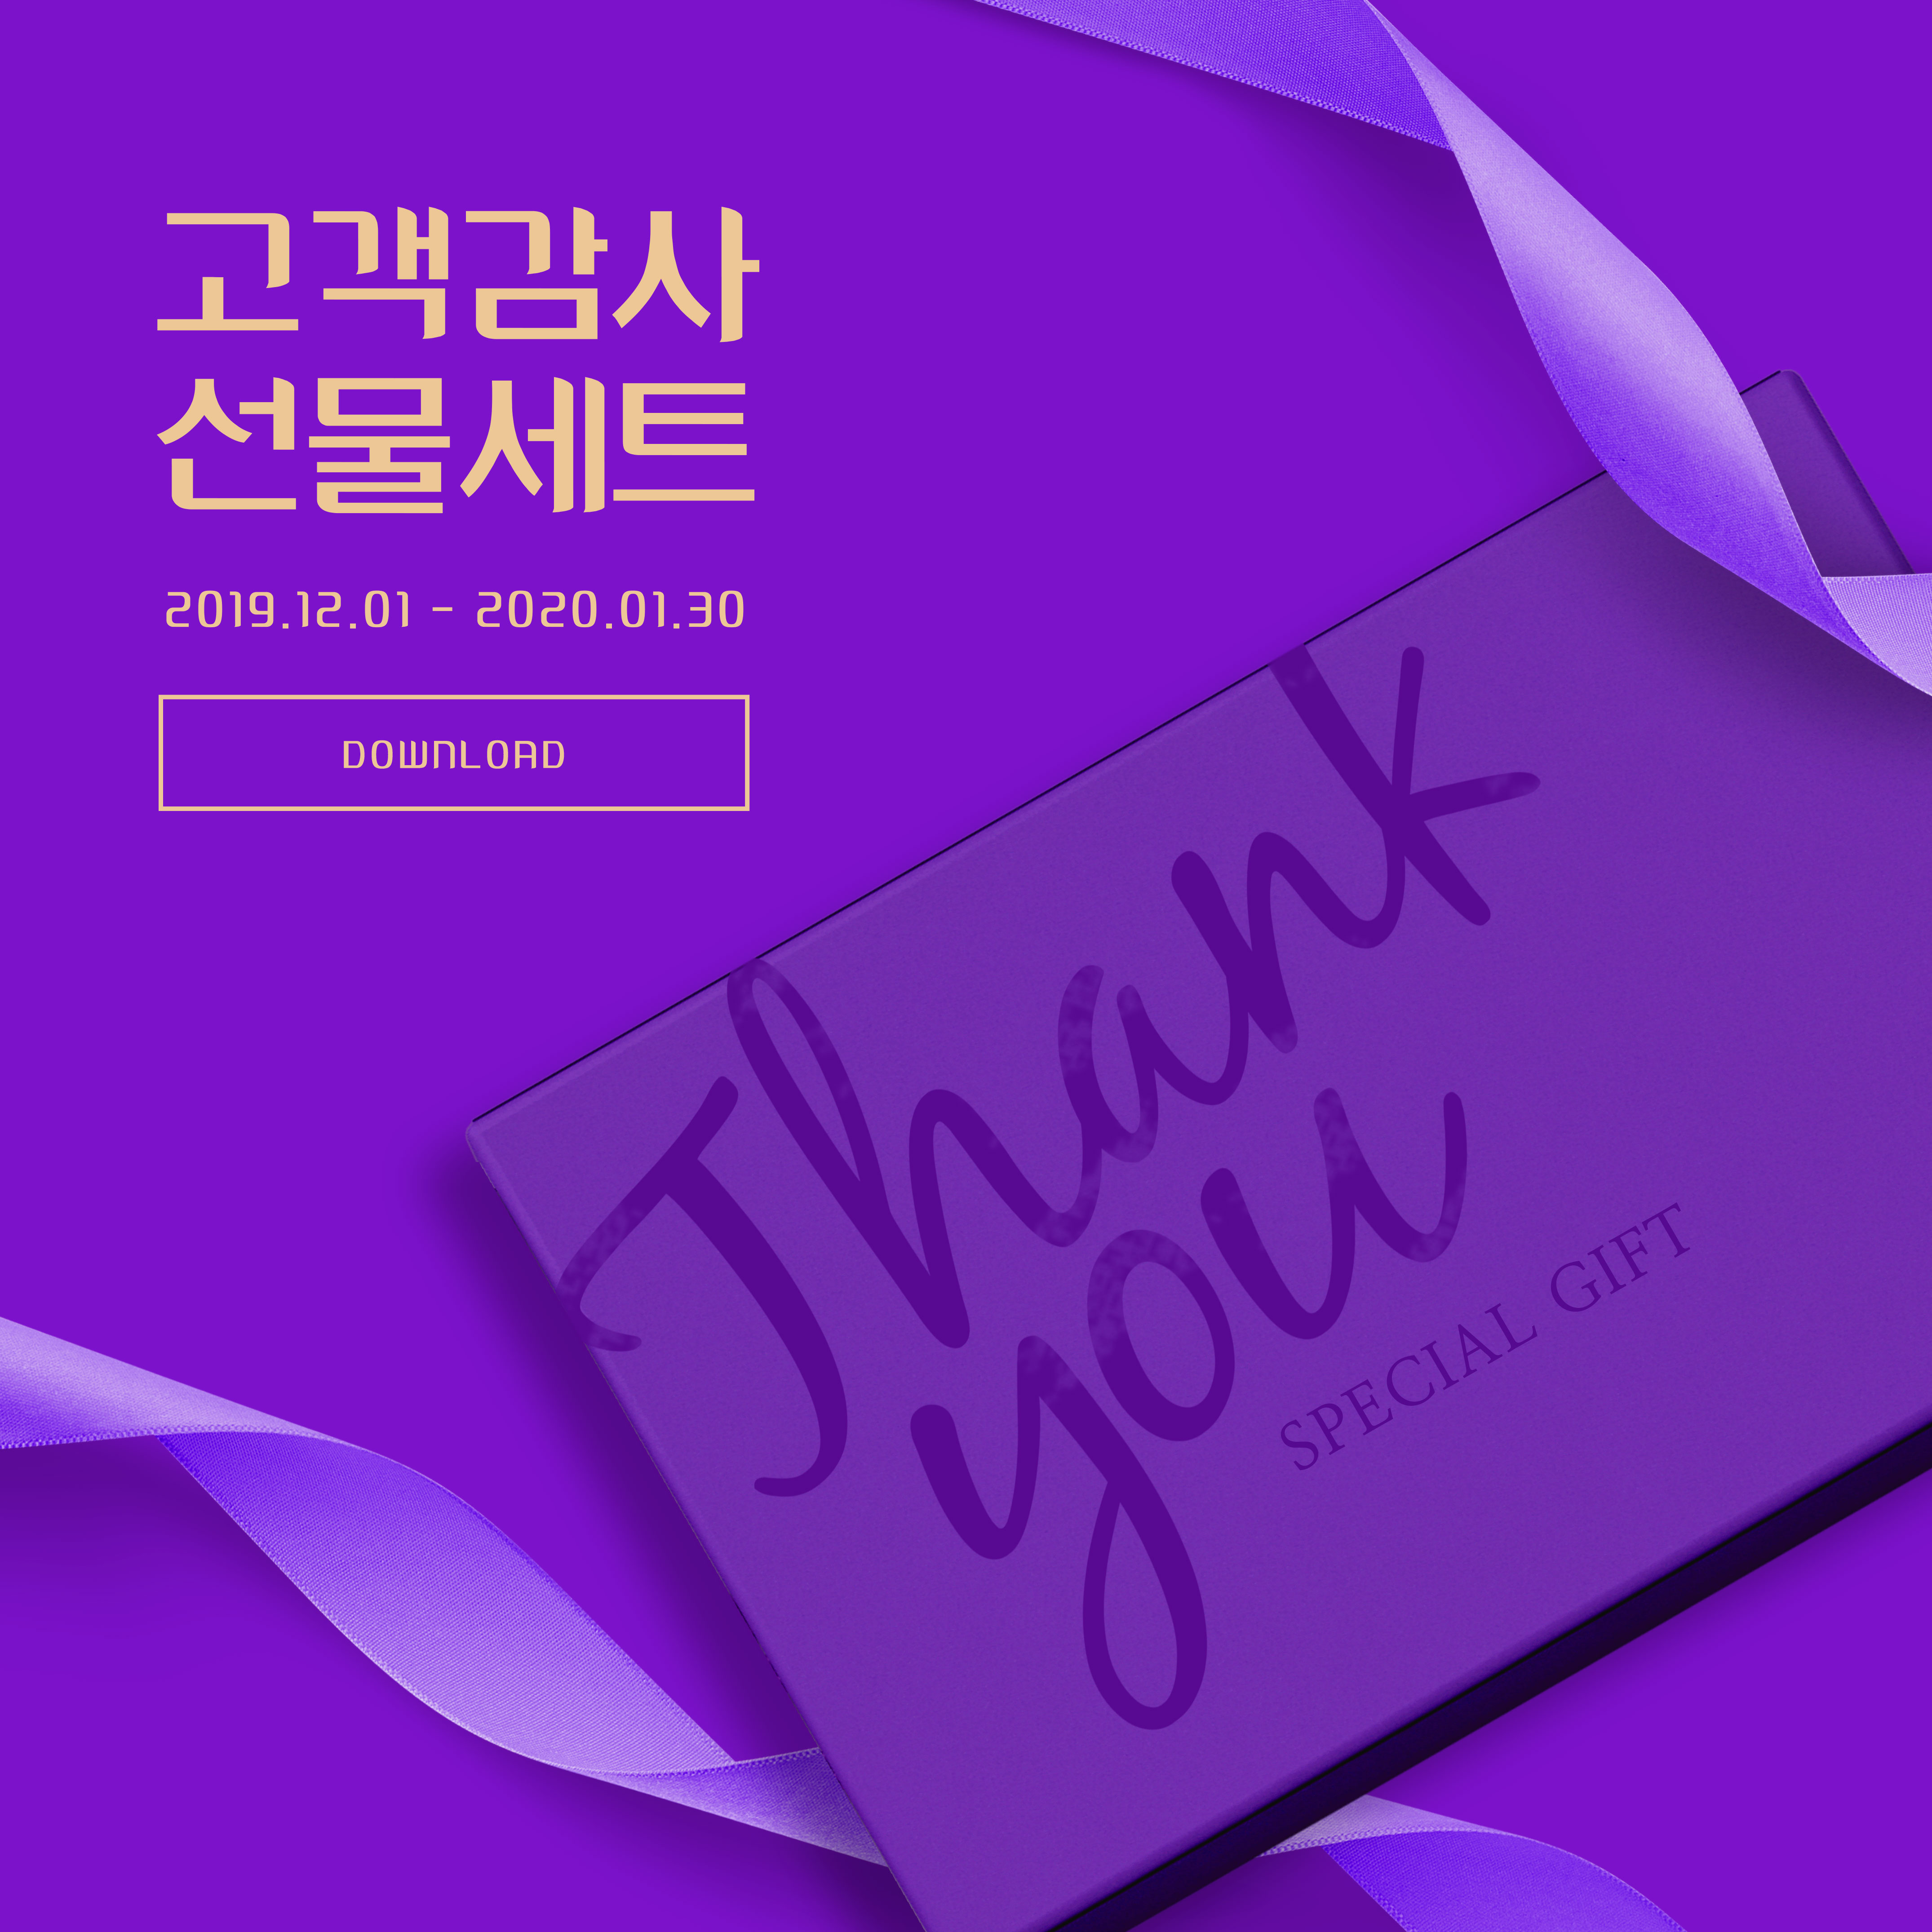 周年纪念活动礼品回馈主题深紫色海报PSD素材非凡图库精选素材插图